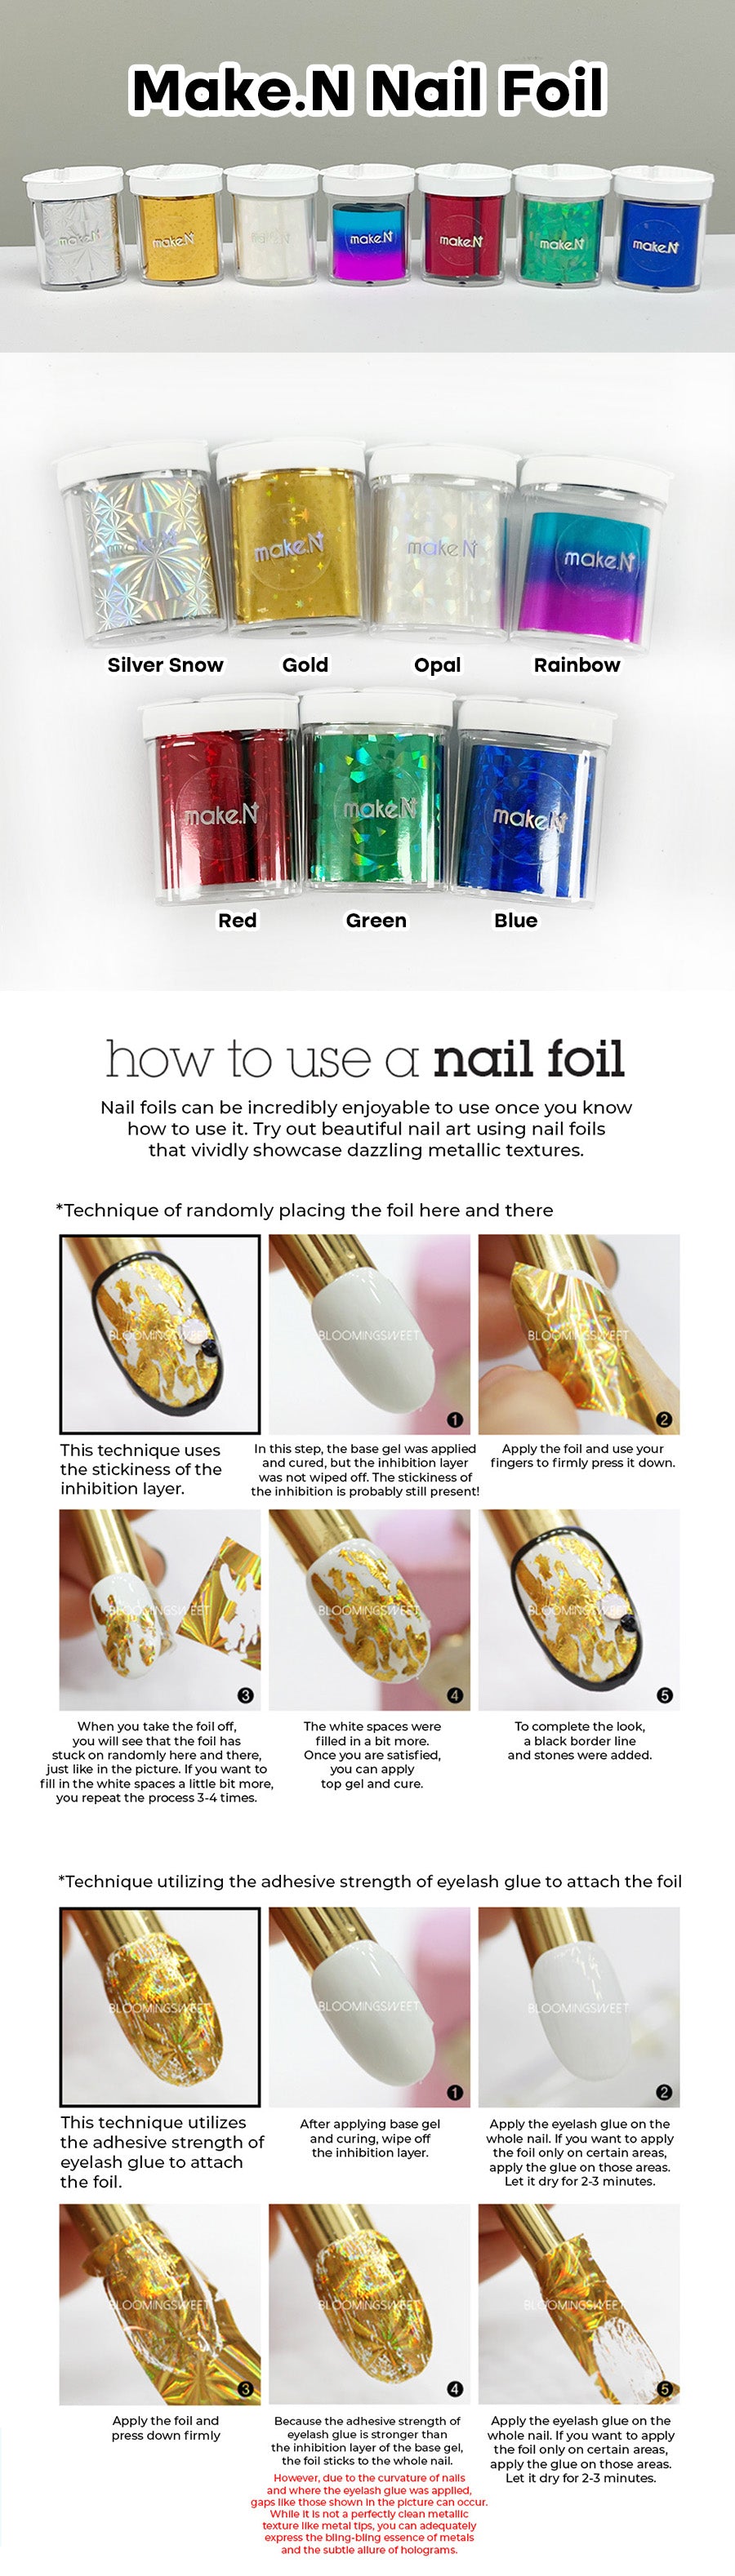 Make.N Nail Foil